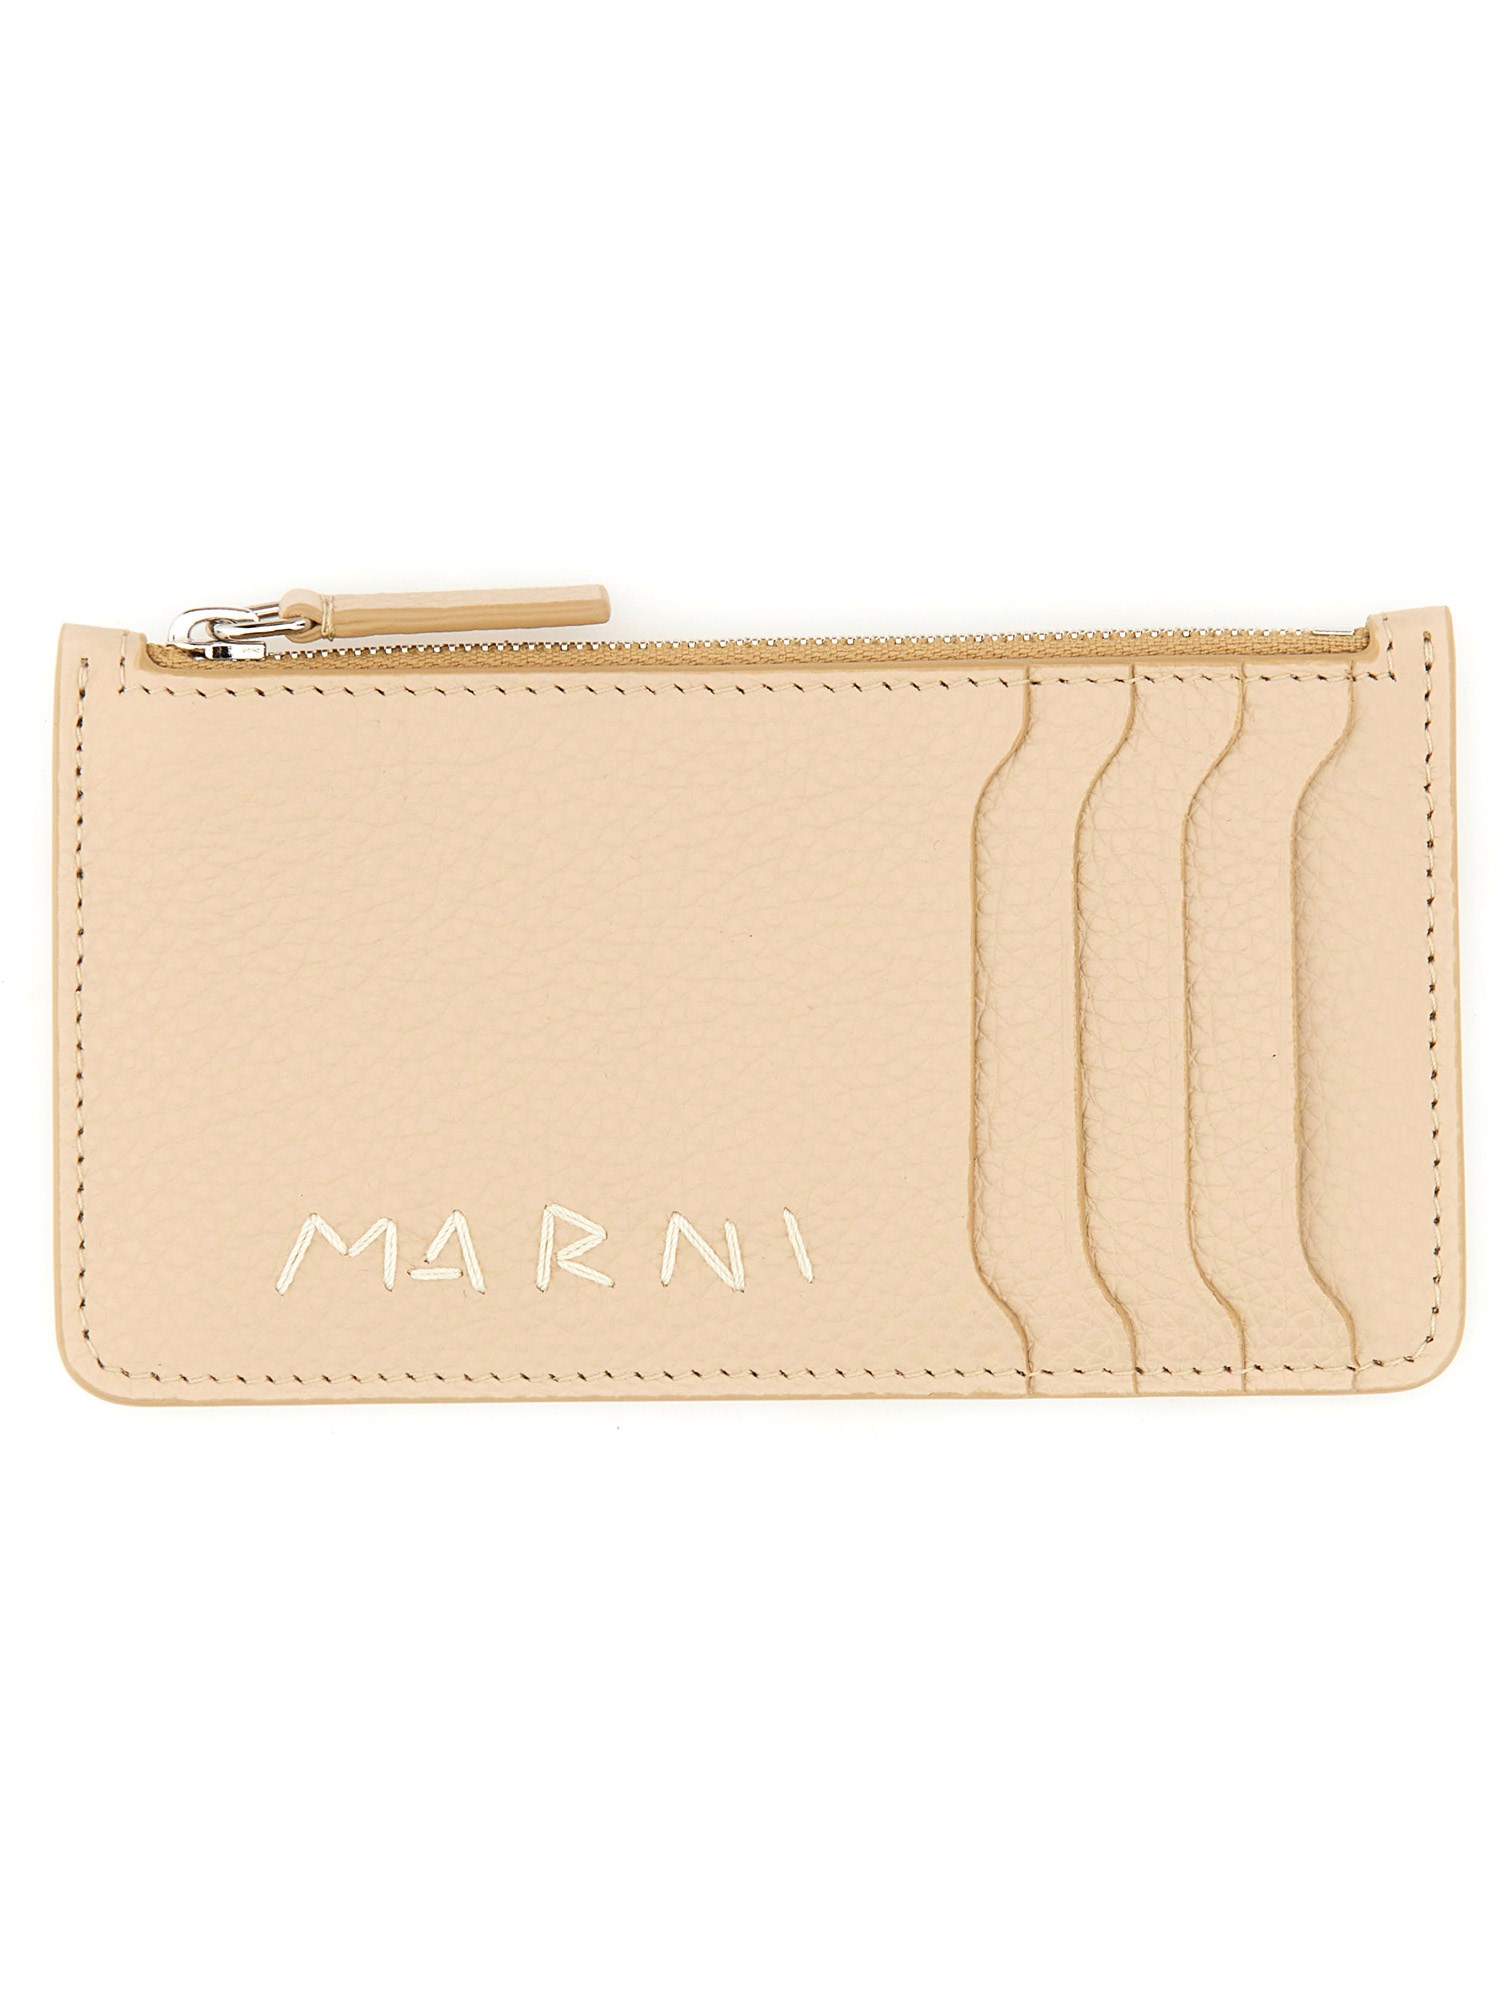 Marni marni card holder with logo